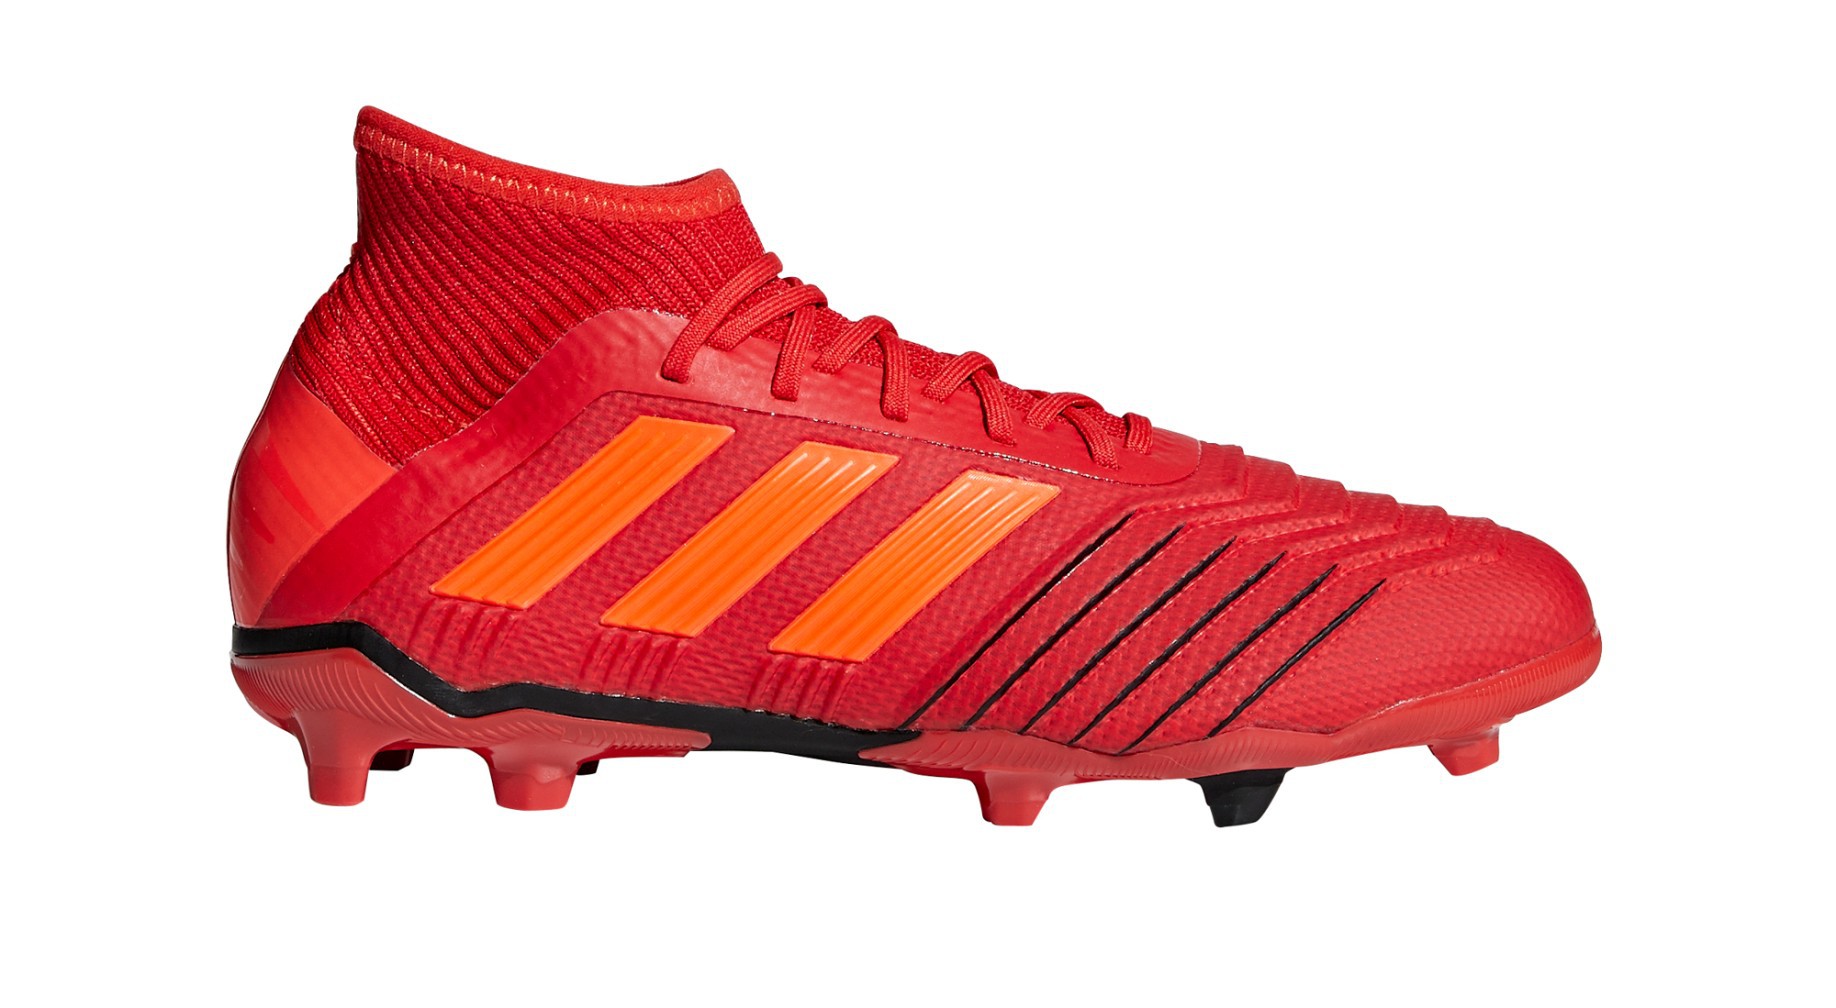 Botas de Adidas Predator FG Iniciador Pack colore rojo - Adidas - SportIT.com